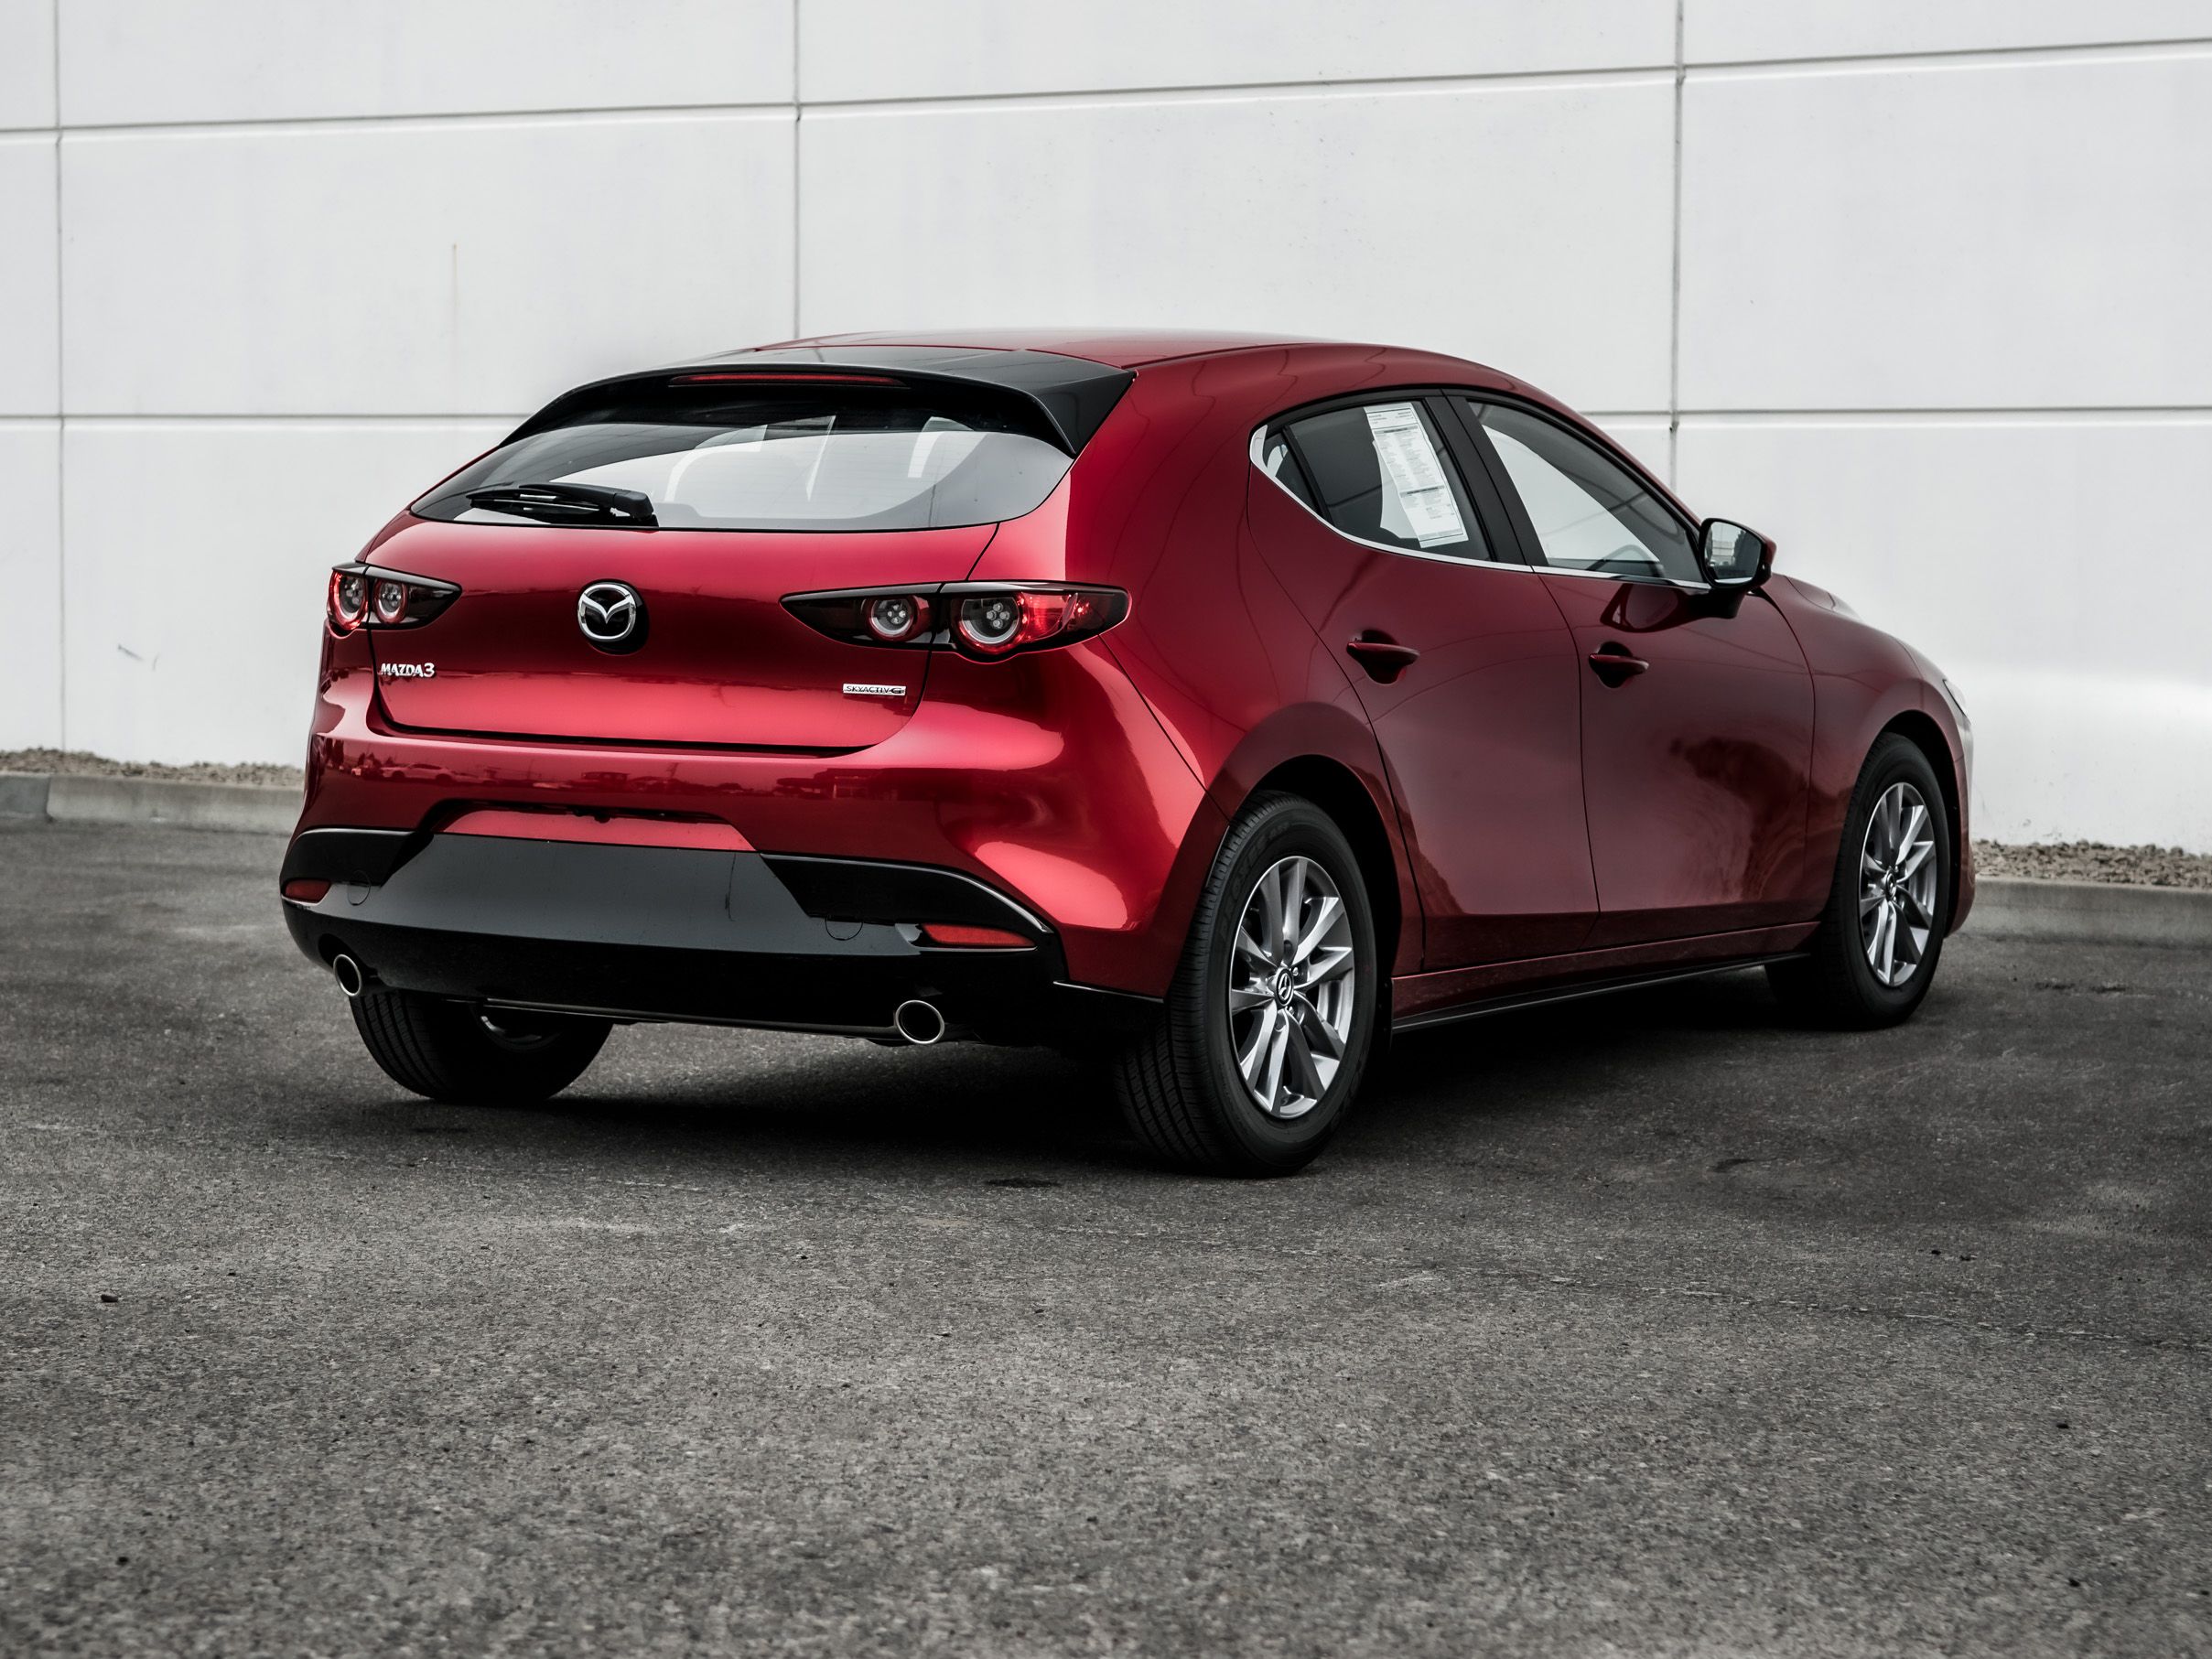 New 2021 Mazda3 GS Front Wheel Drive 4 Door Hatchback